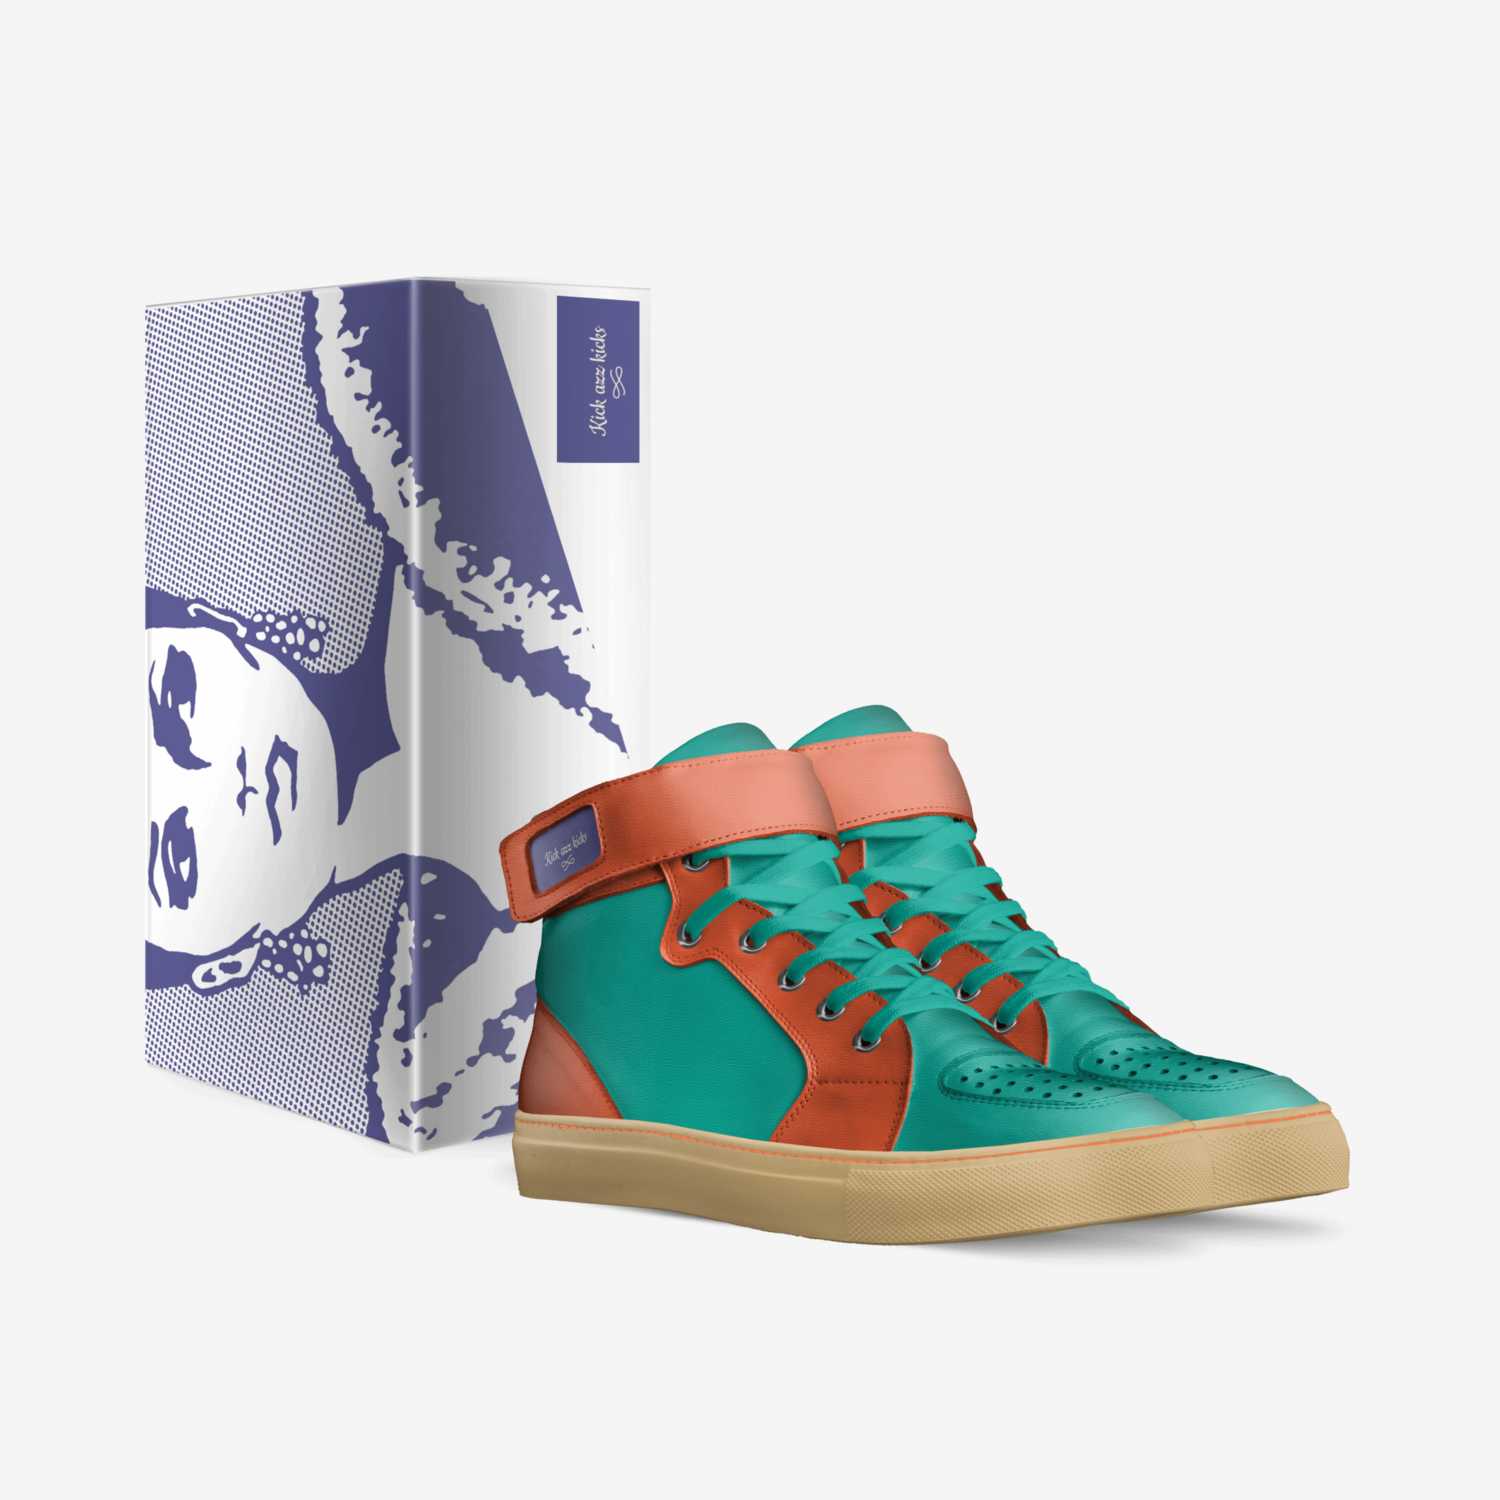 Kick azz kicks custom made in Italy shoes by Keaira Wilkey | Box view